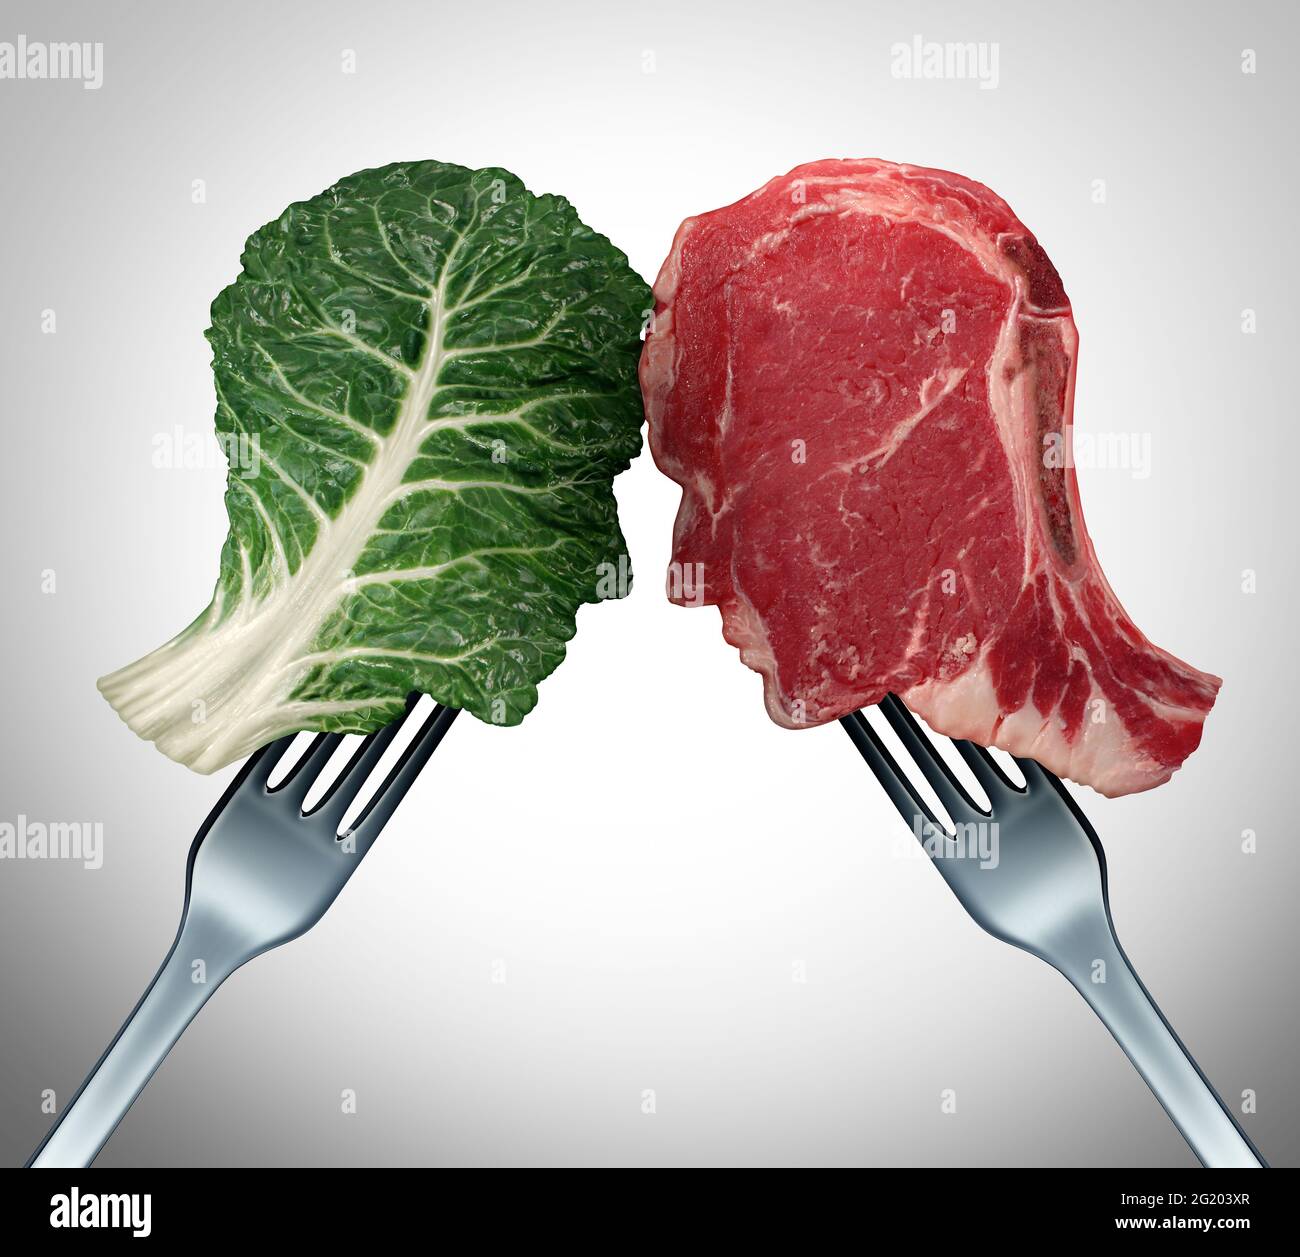 Lebensmittelauswahl und gesundheitsbezogene Essmöglichkeiten wie ein menschliches kopfförmiges grünes Gemüsekieferblatt und Fleisch als rotes Steak für Ernährungsentscheidungen. Stockfoto